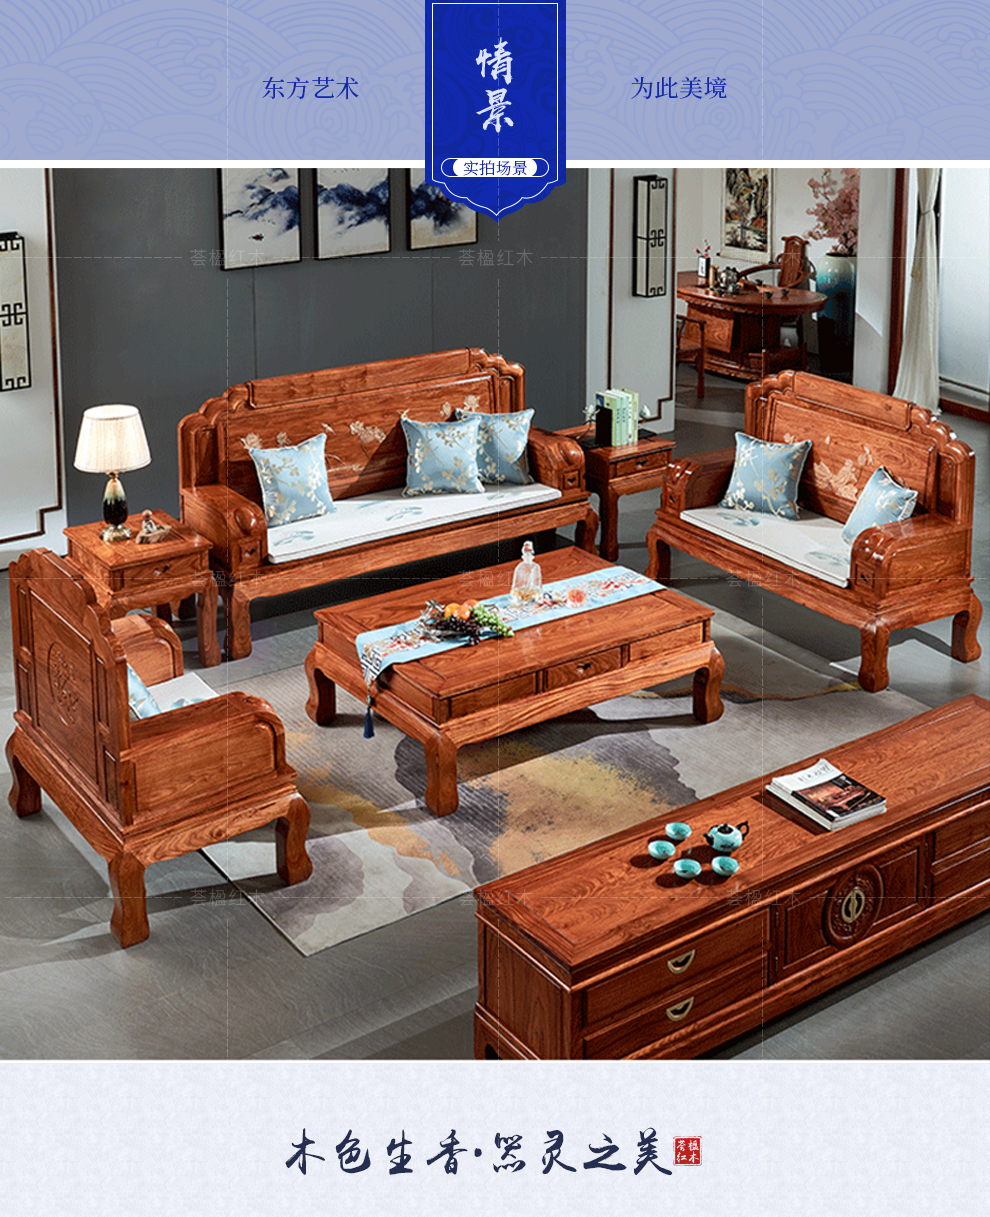 荟楹红木家具非洲花梨学名刺猬紫檀沙发实木沙发组合客厅家具沙发六